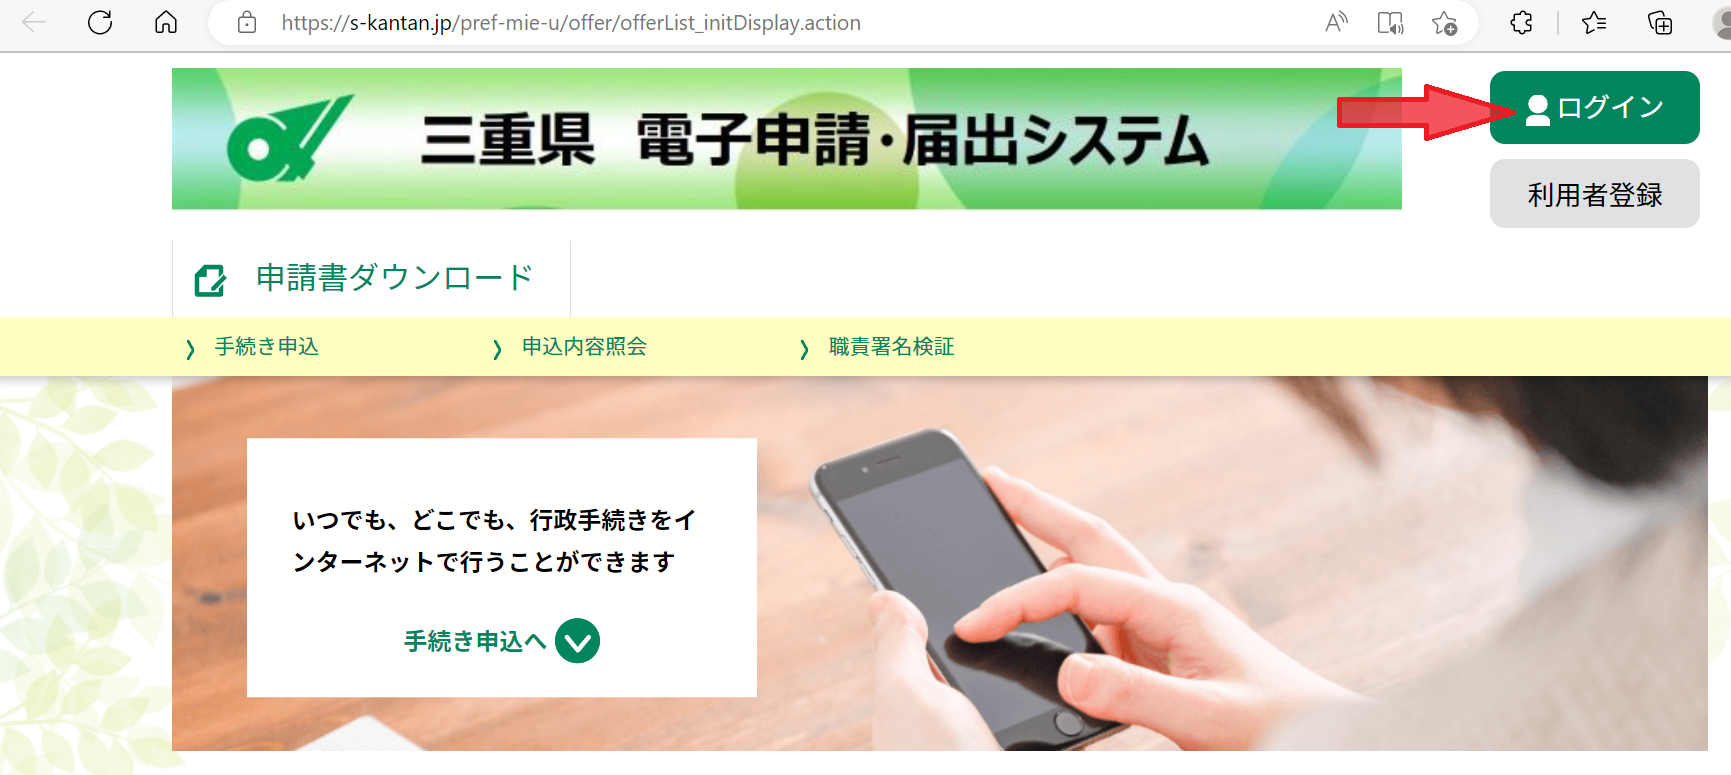 三重県電子申請初期画面・ログインボタン